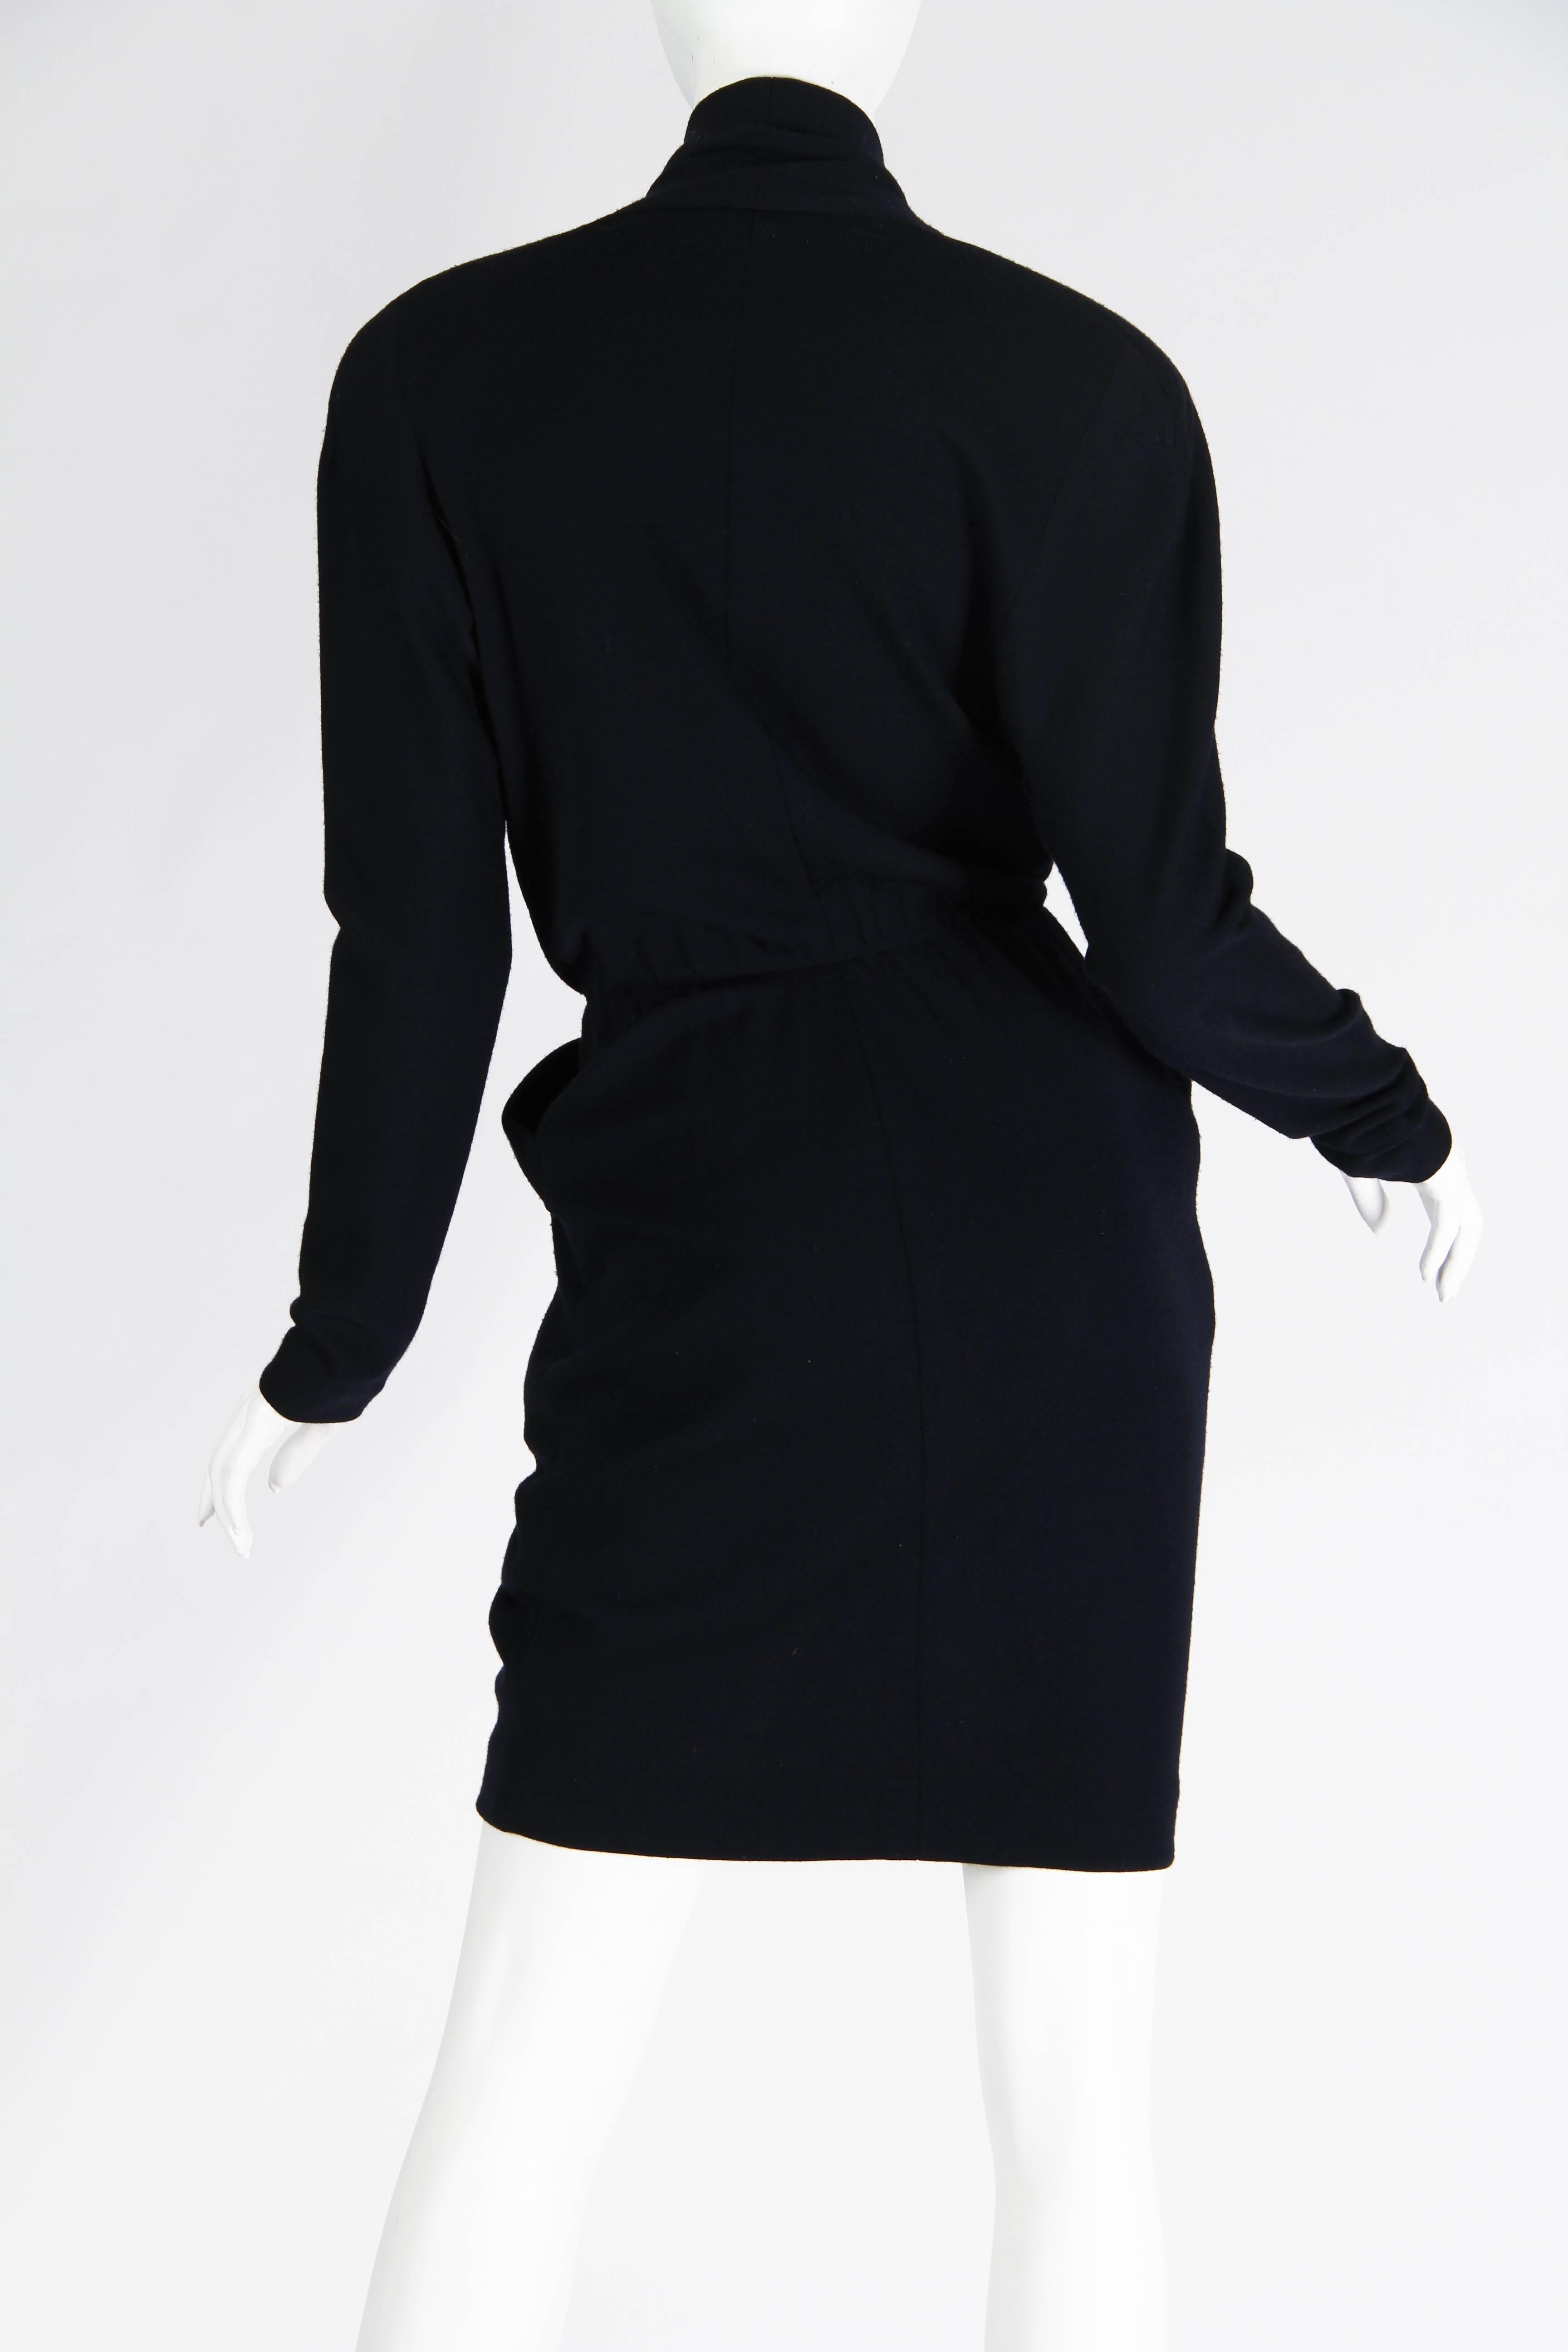 Women's 1980s Donna Karan Wool Jersey Dress with Plunging Neckline